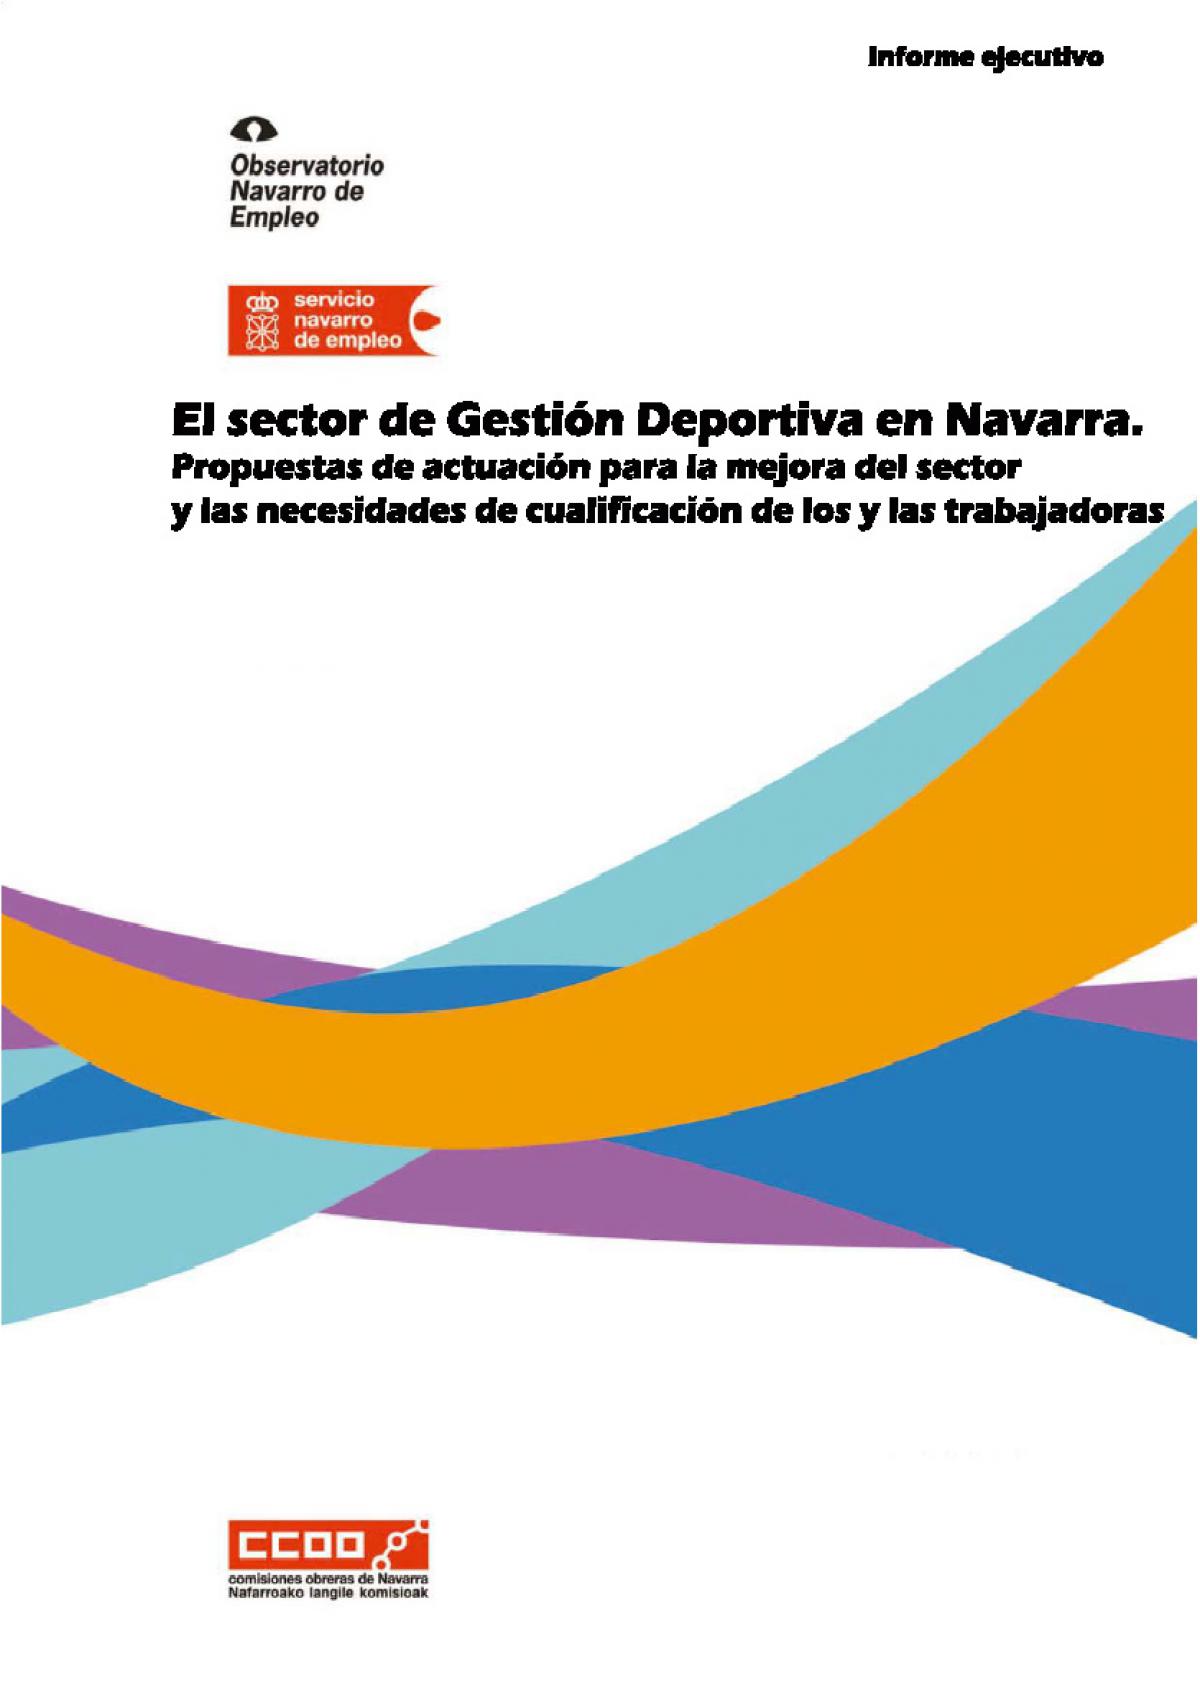 Informe sobre el Estudio del sector de Gestin Deportiva en Navarra